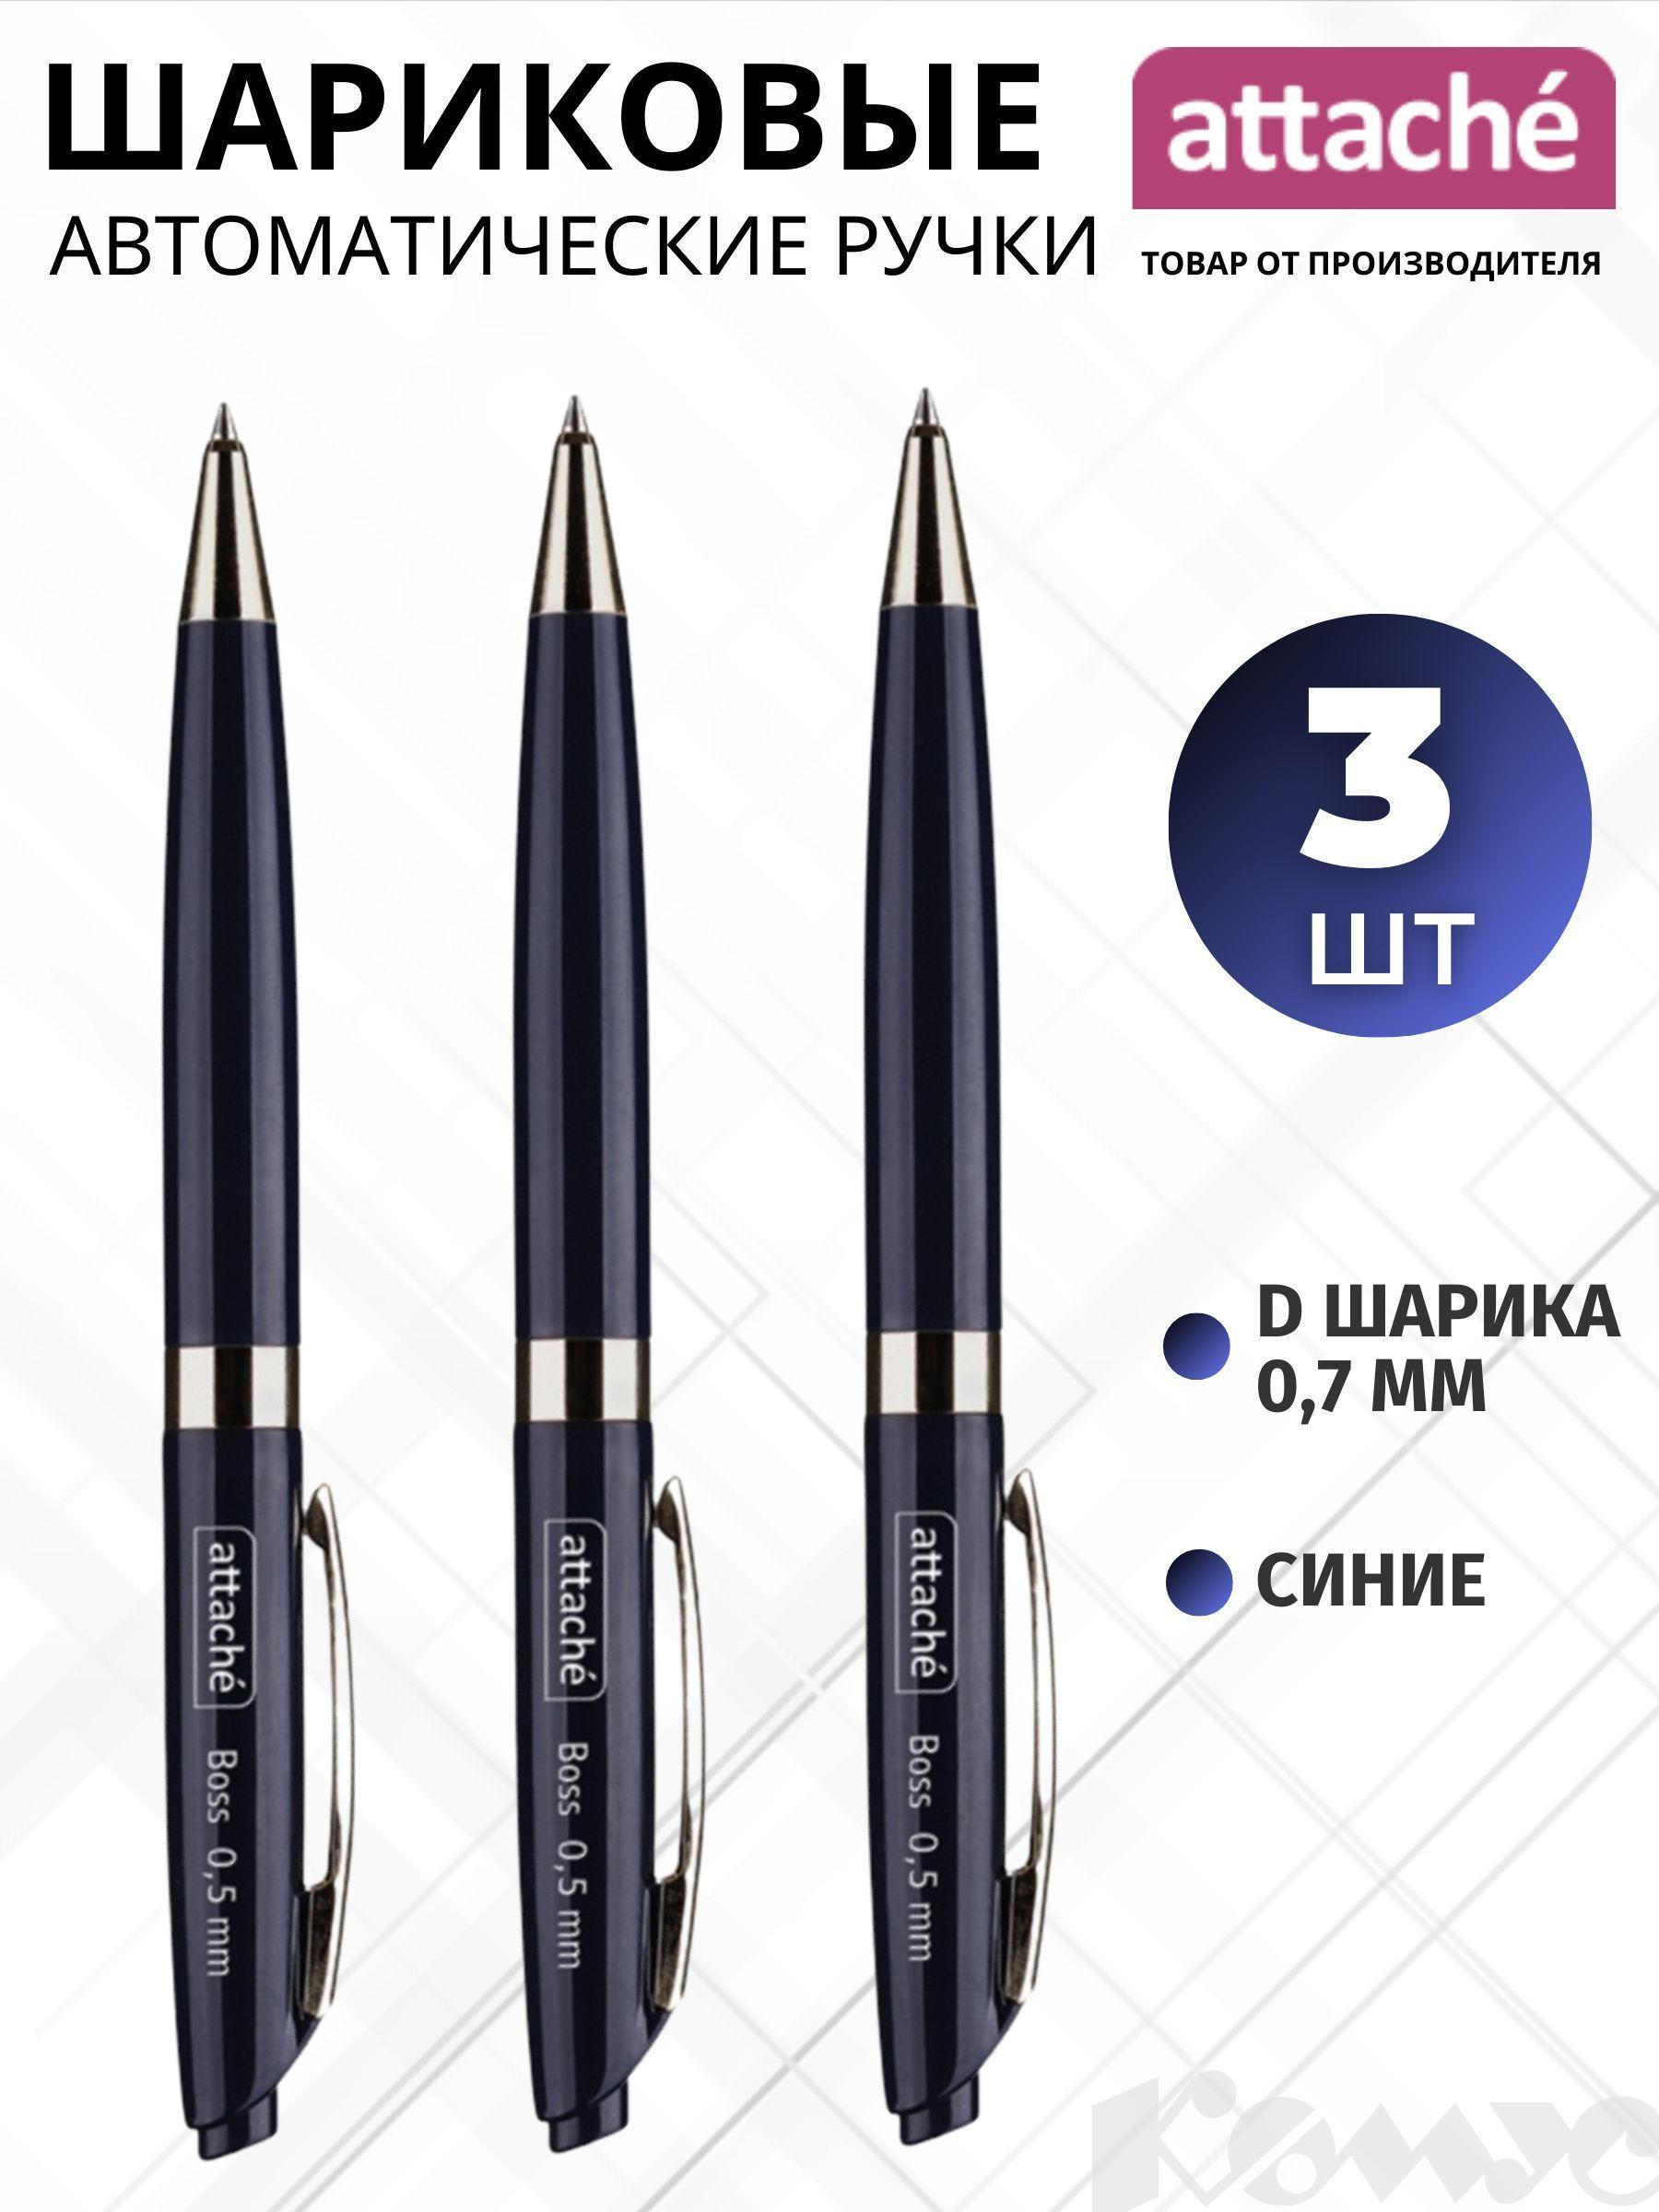 Ручки шариковые Attache Boss автоматические, синие, линия 0.5 мм, набор 3 штуки